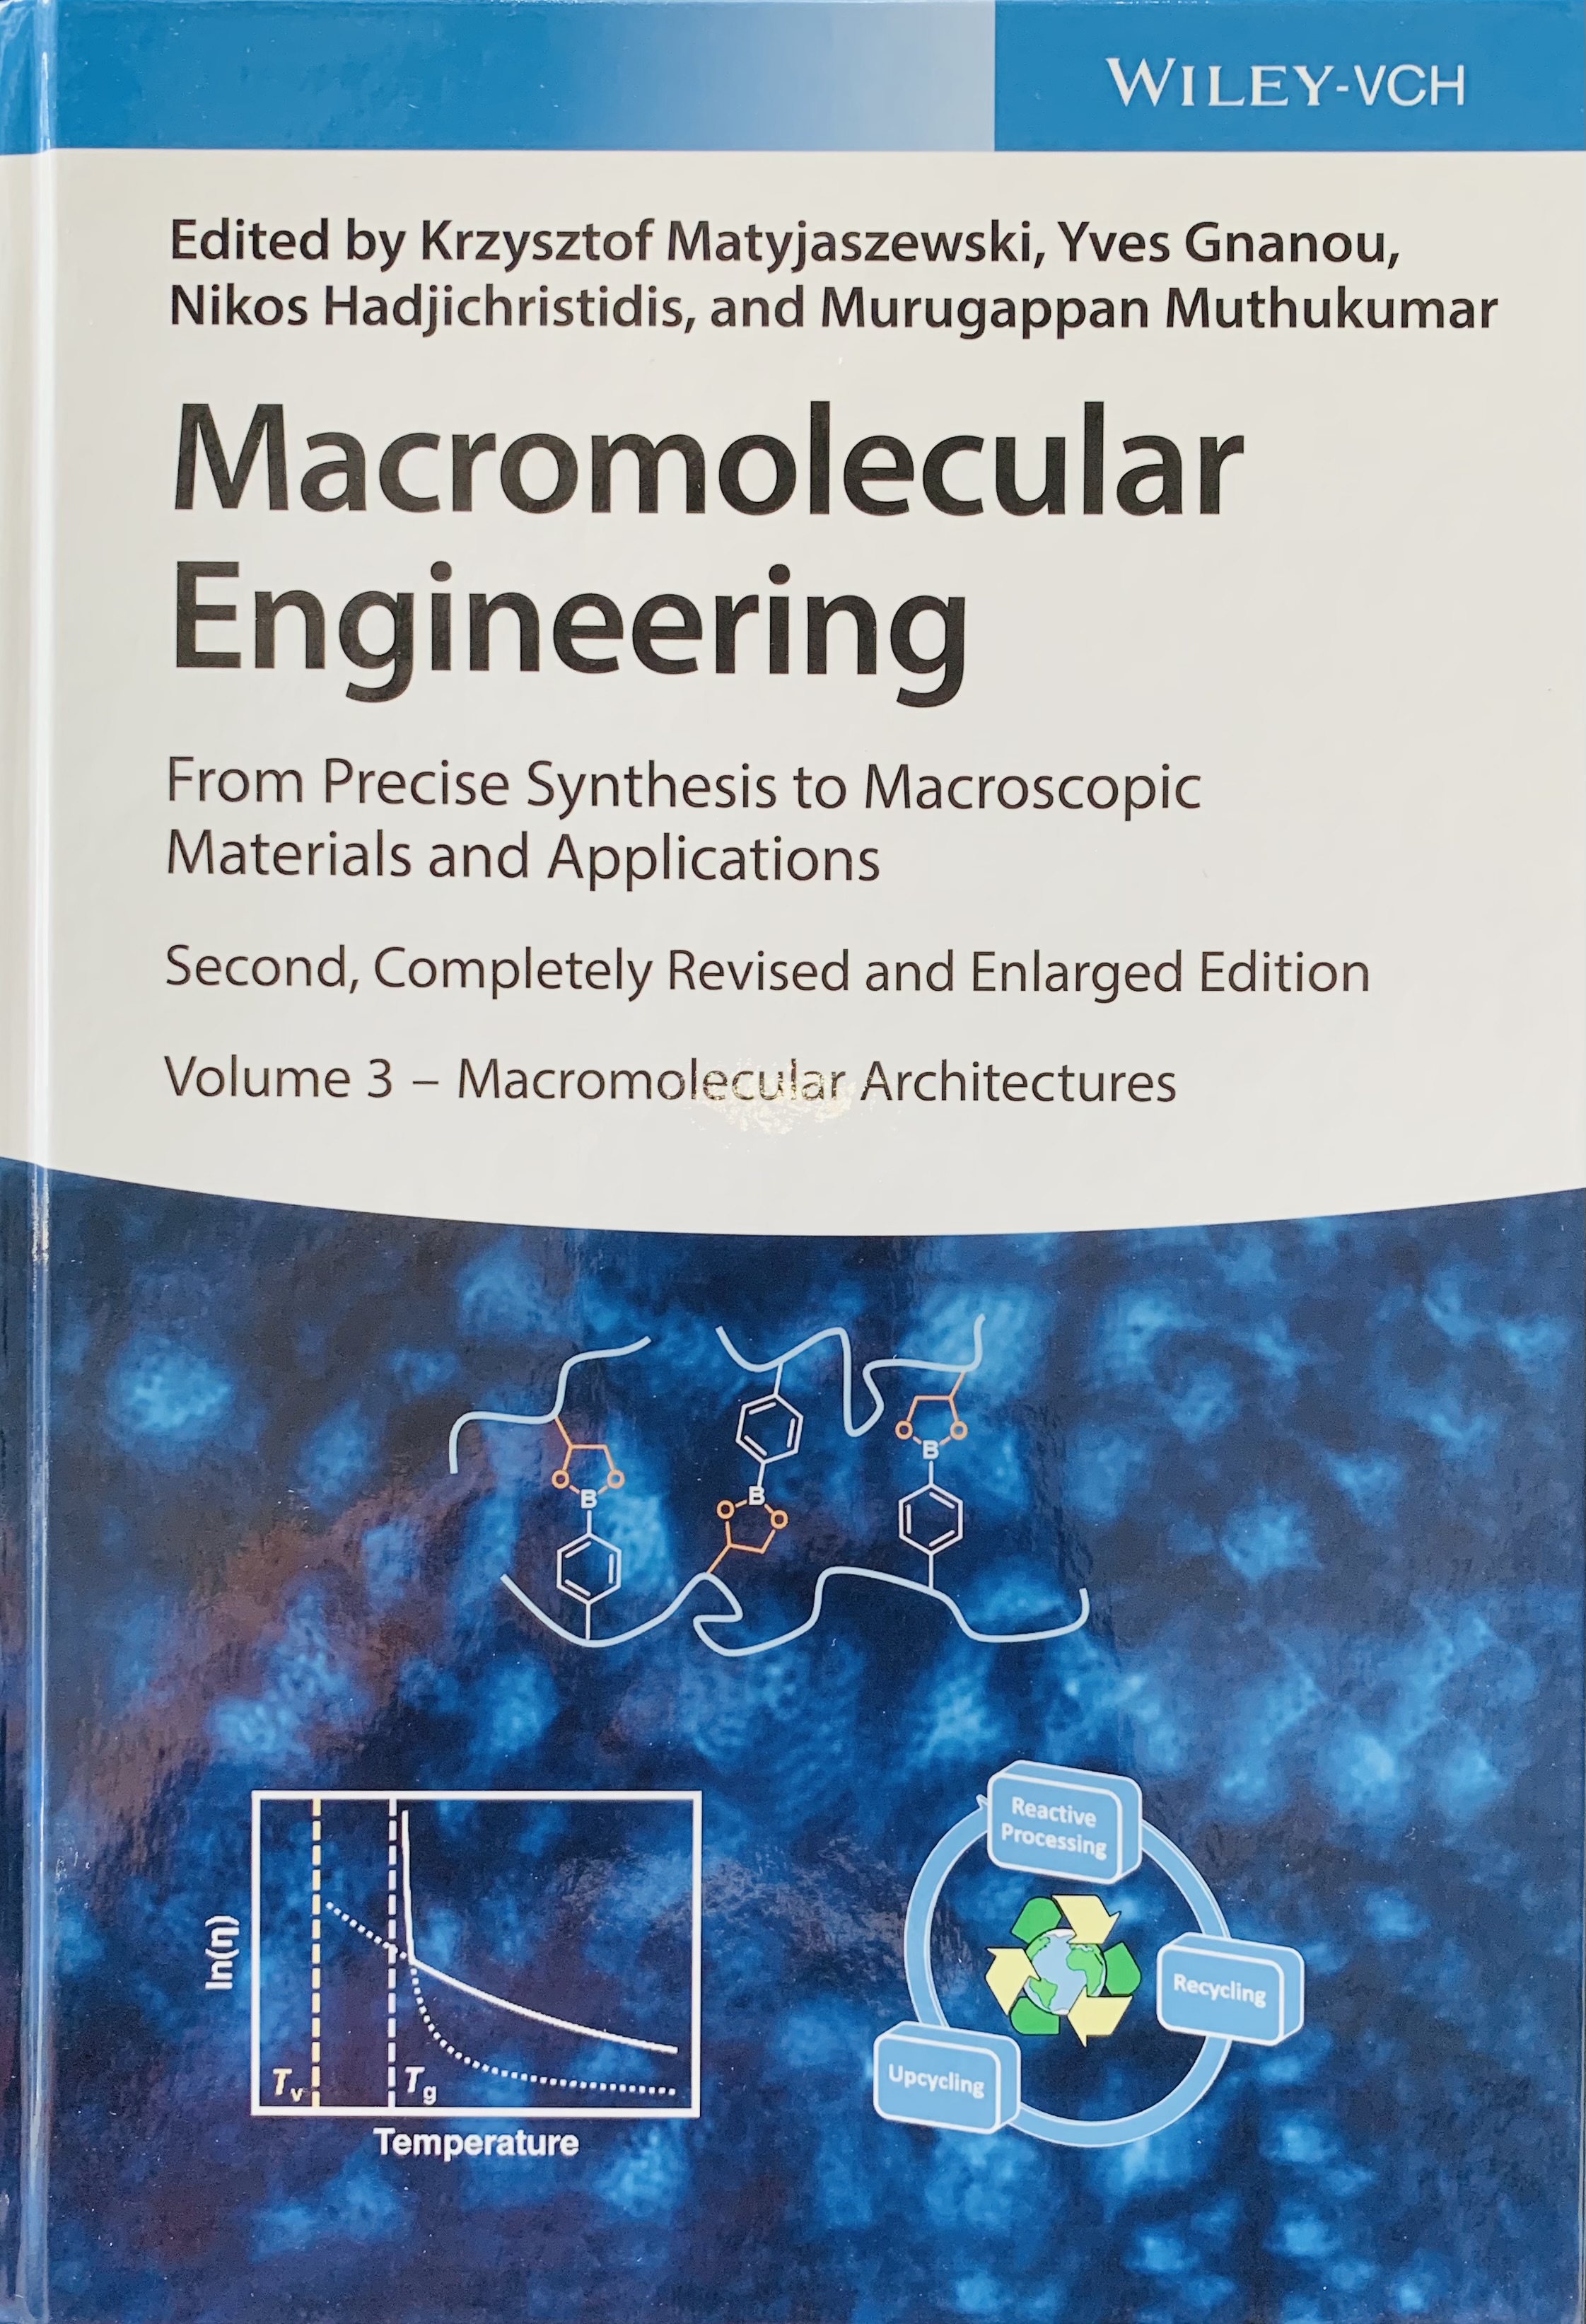 Macromolecular Architecture